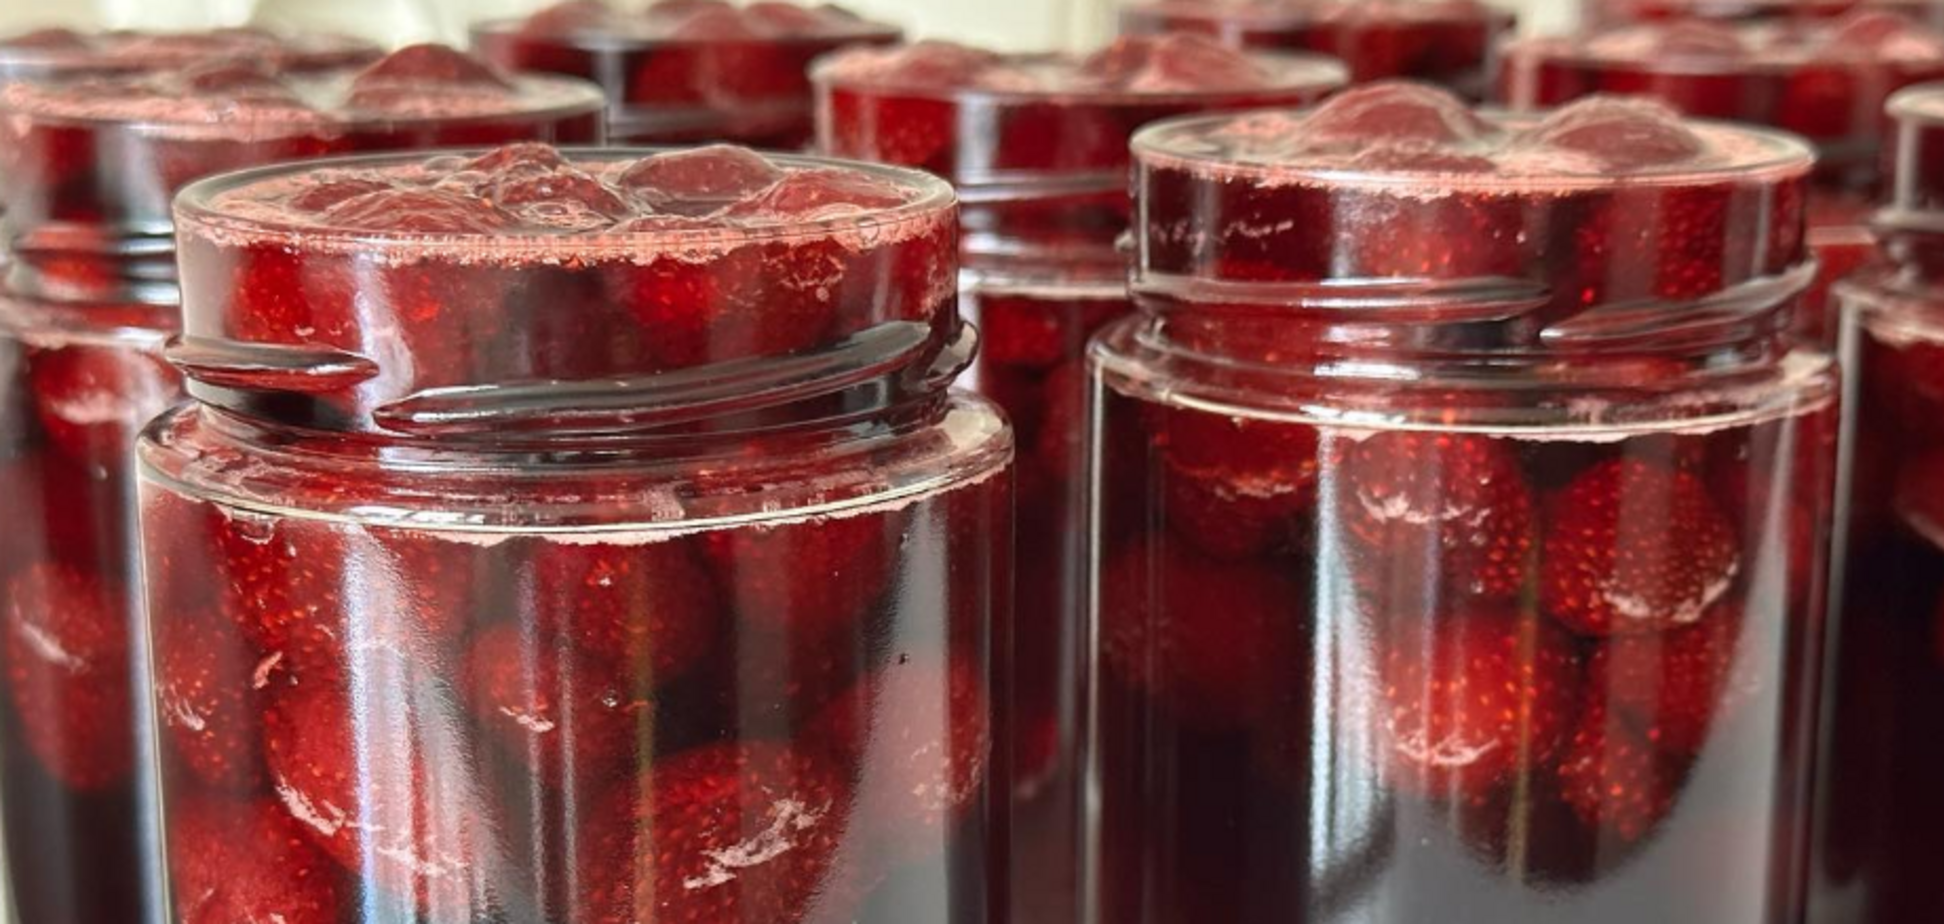 Як правильно варити полуничне варення, щоб ягоди залишались цілими: рецепт